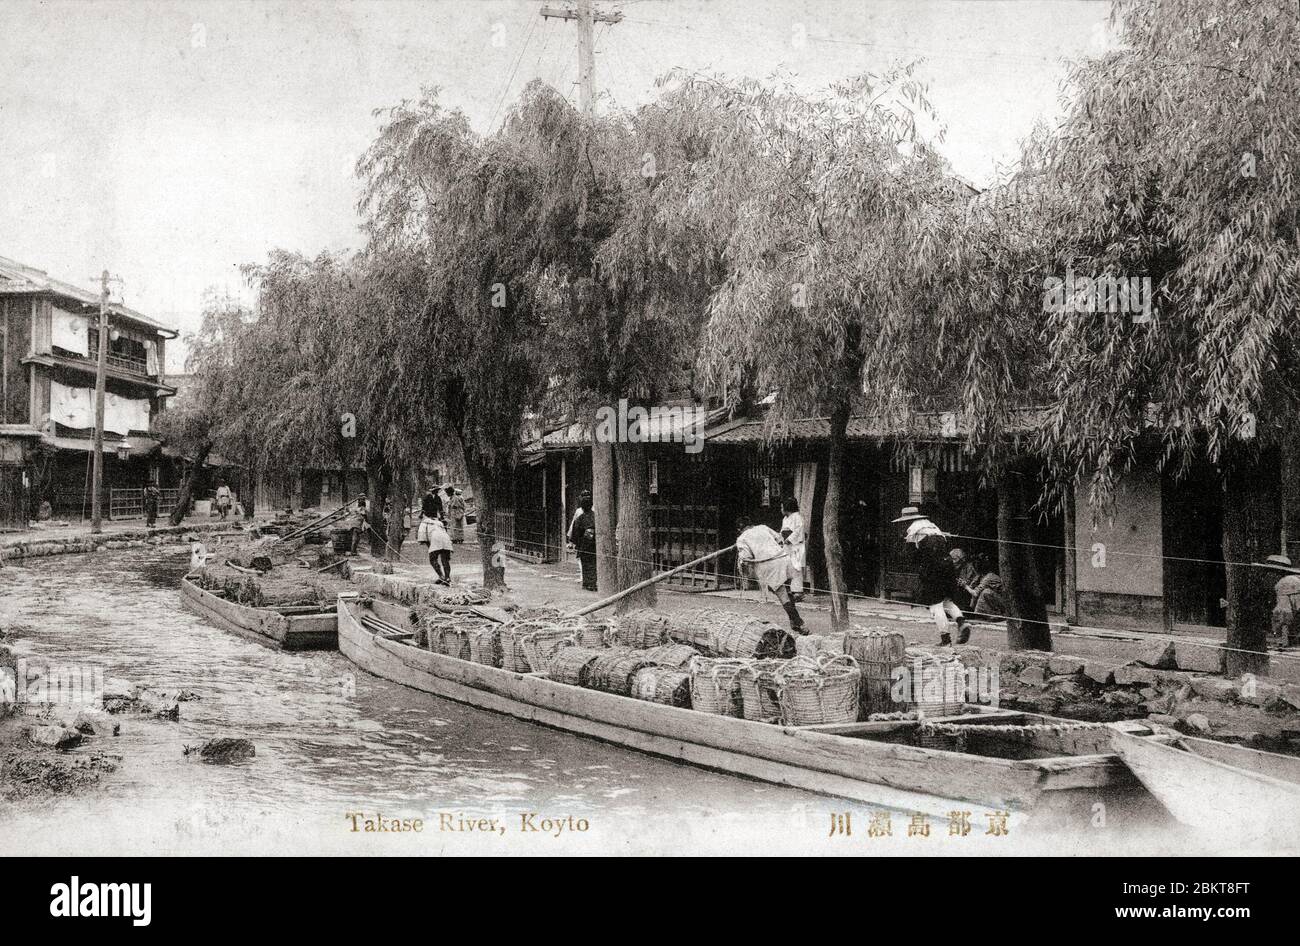 [ 1920 Japón - Barcos japoneses en Takasegawa, Kyoto ] — los hombres están tirando barcazas cargadas de mercancías en el Takasegawa, un estrecho canal de Kioto. Los sauces ofrecen sombra. postal vintage del siglo xx. Foto de stock